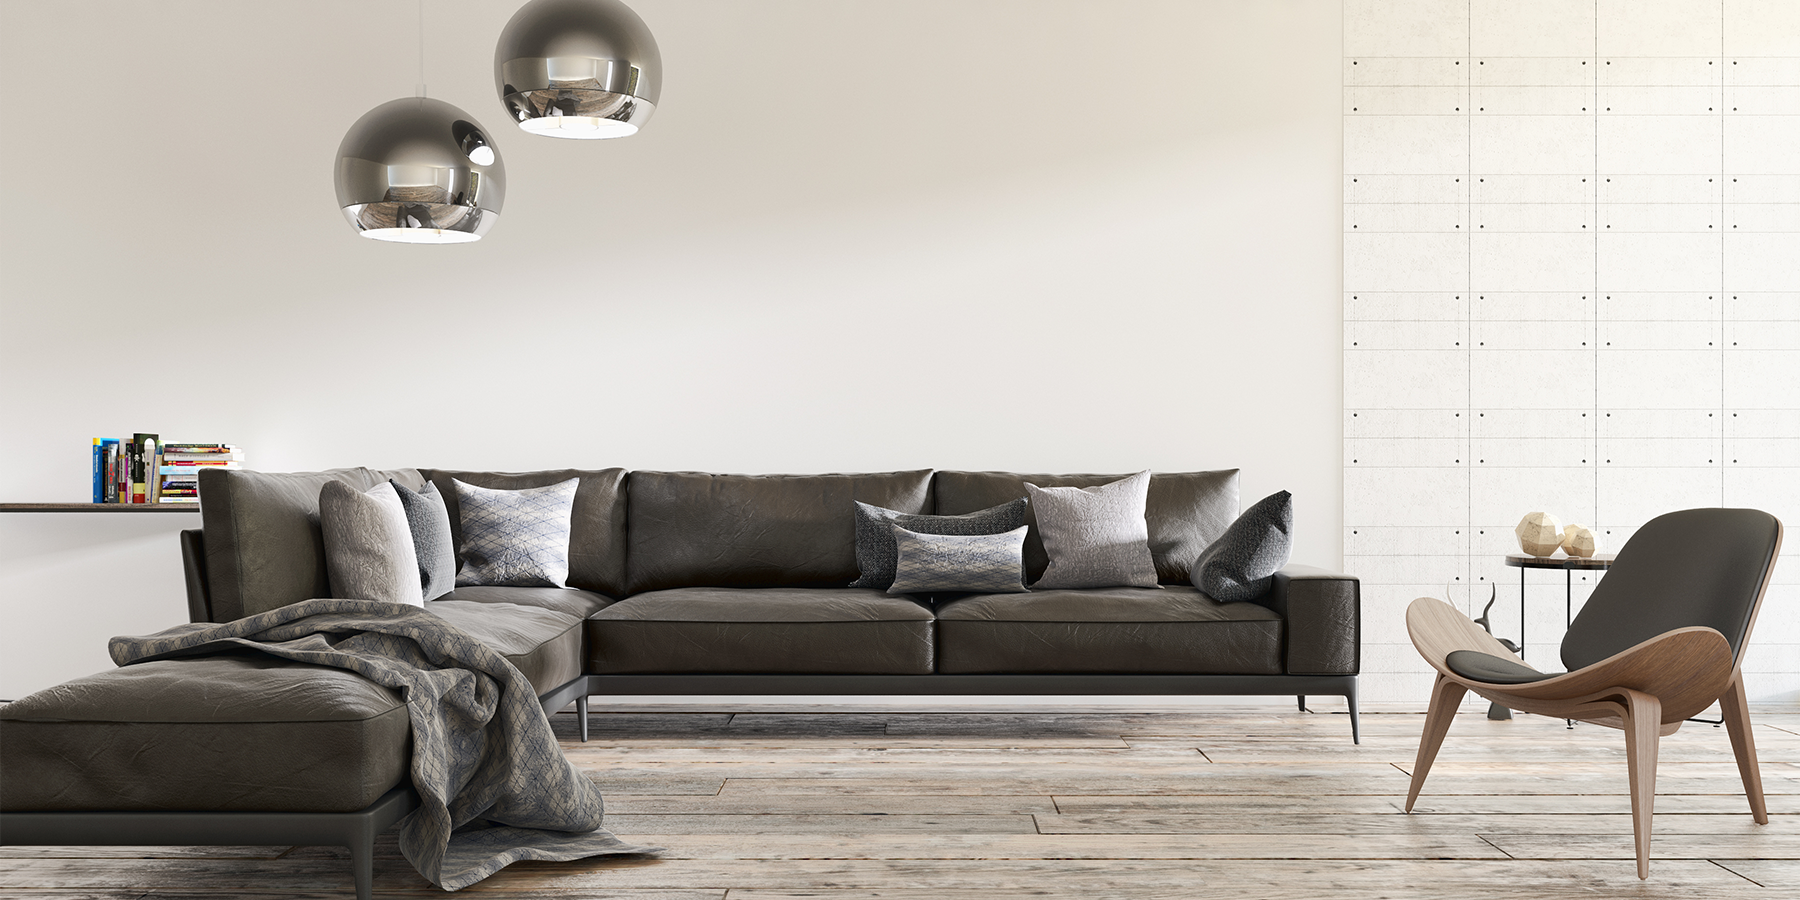 Egyszerűség és funkcionalitás - rendezd be az otthonod a modern stílus jegyében!